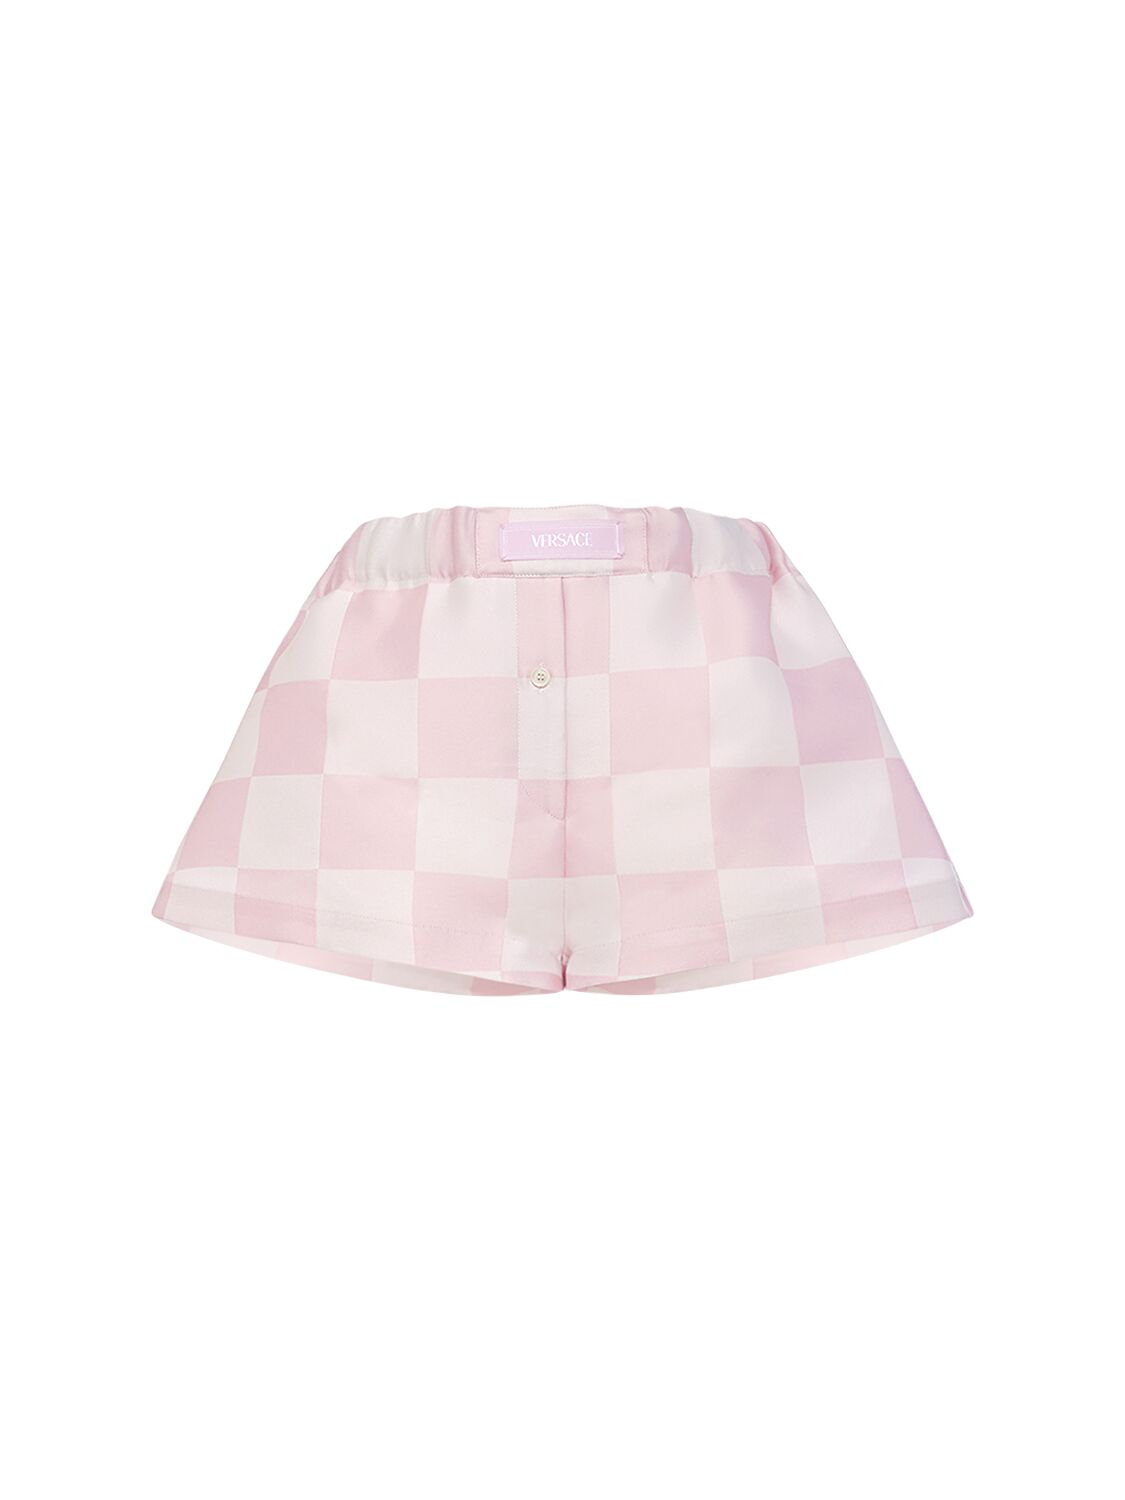 Versace Big Damier Silk Blend Duchesse Shorts In Pastel Pink & White